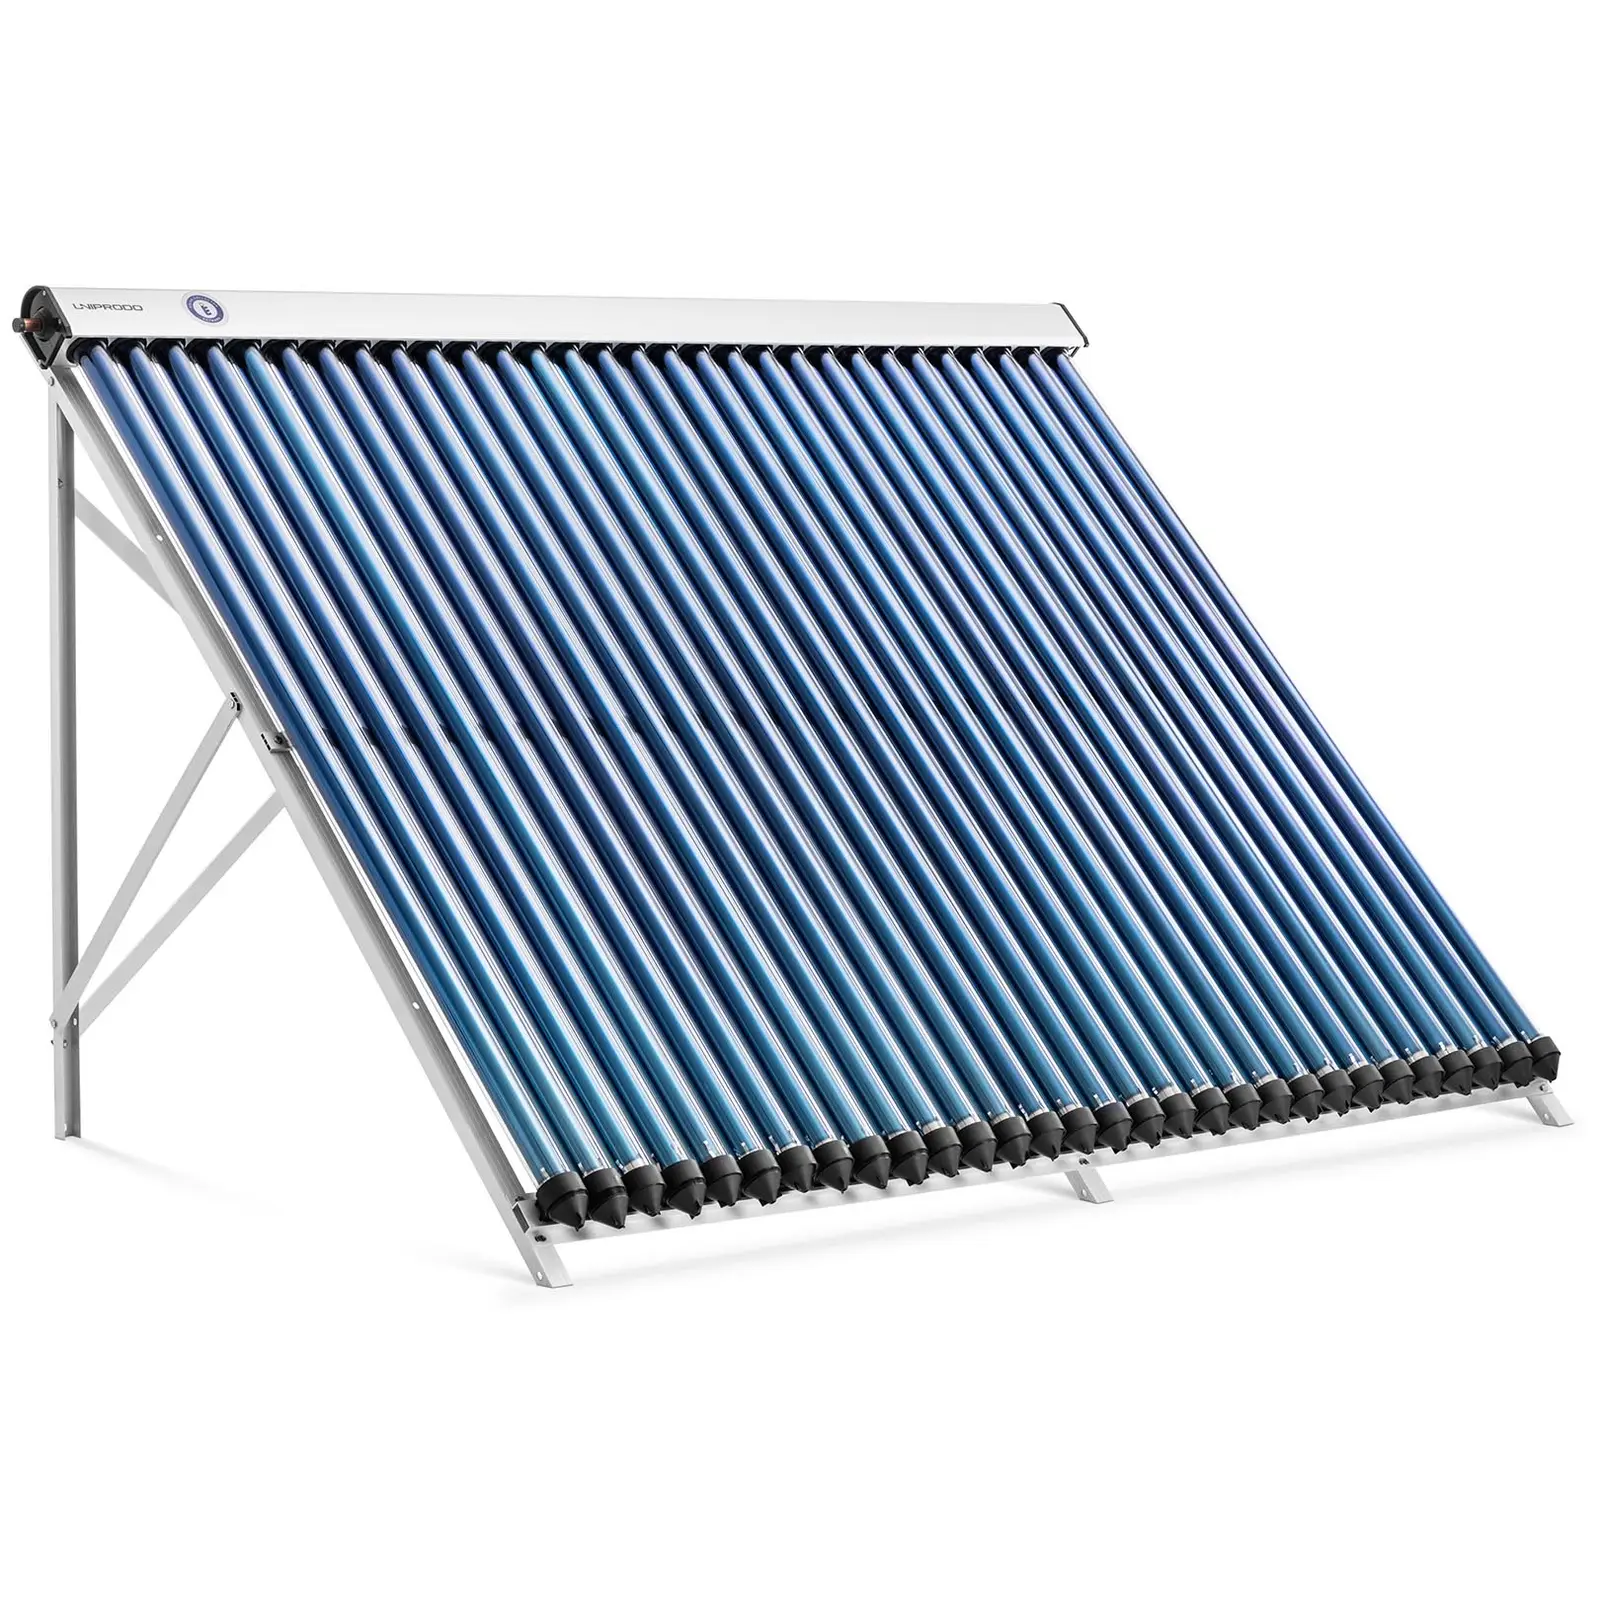 Colector solar de tubos - energía térmica solar - 30 tubos - 250 - 300 L - 2.4 m² - -45 - 90 °C